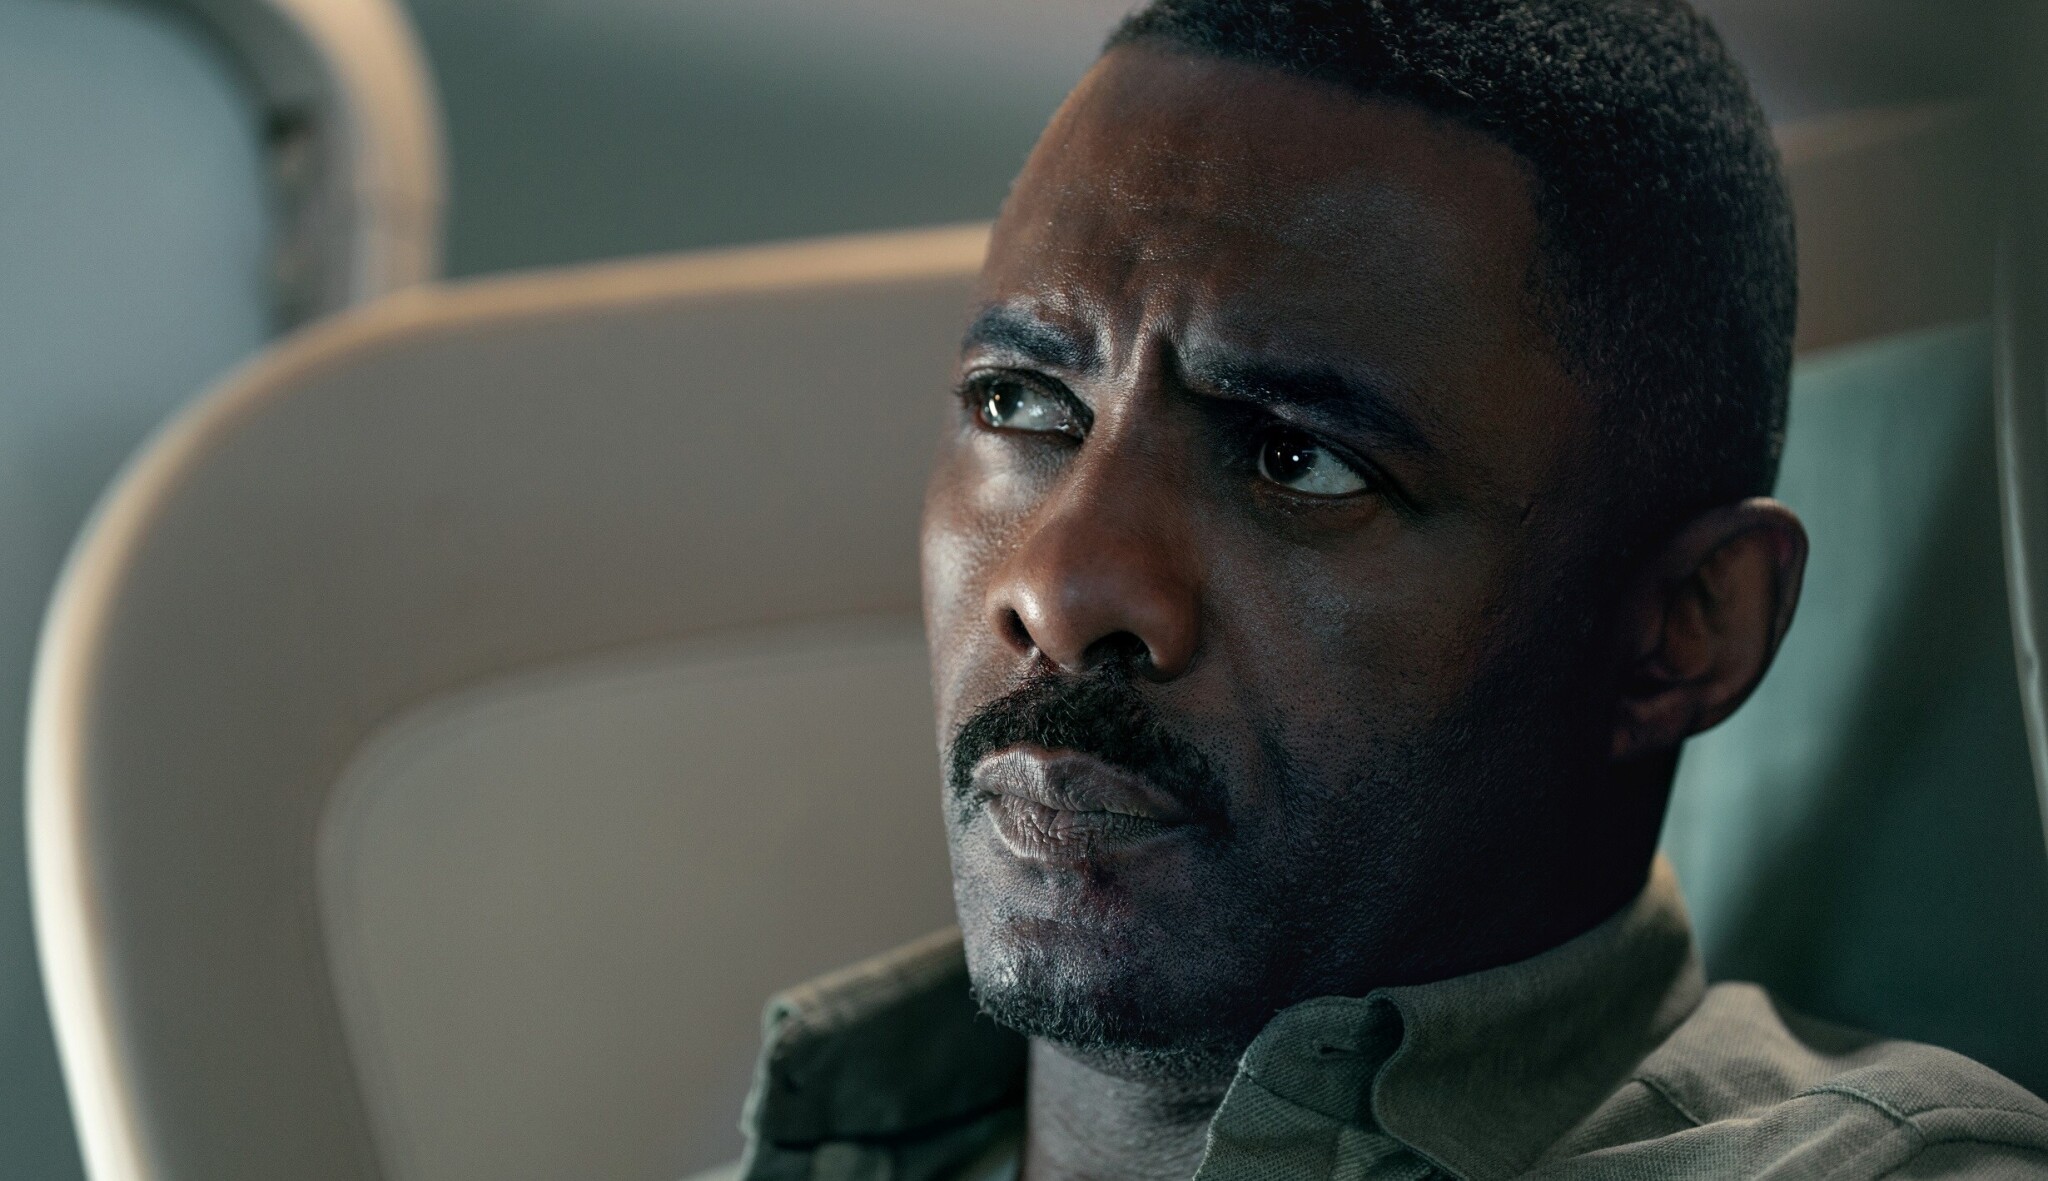 Únos letadla s Idrisem Elbou nenechá vydechnout. Trpí ale na klišé